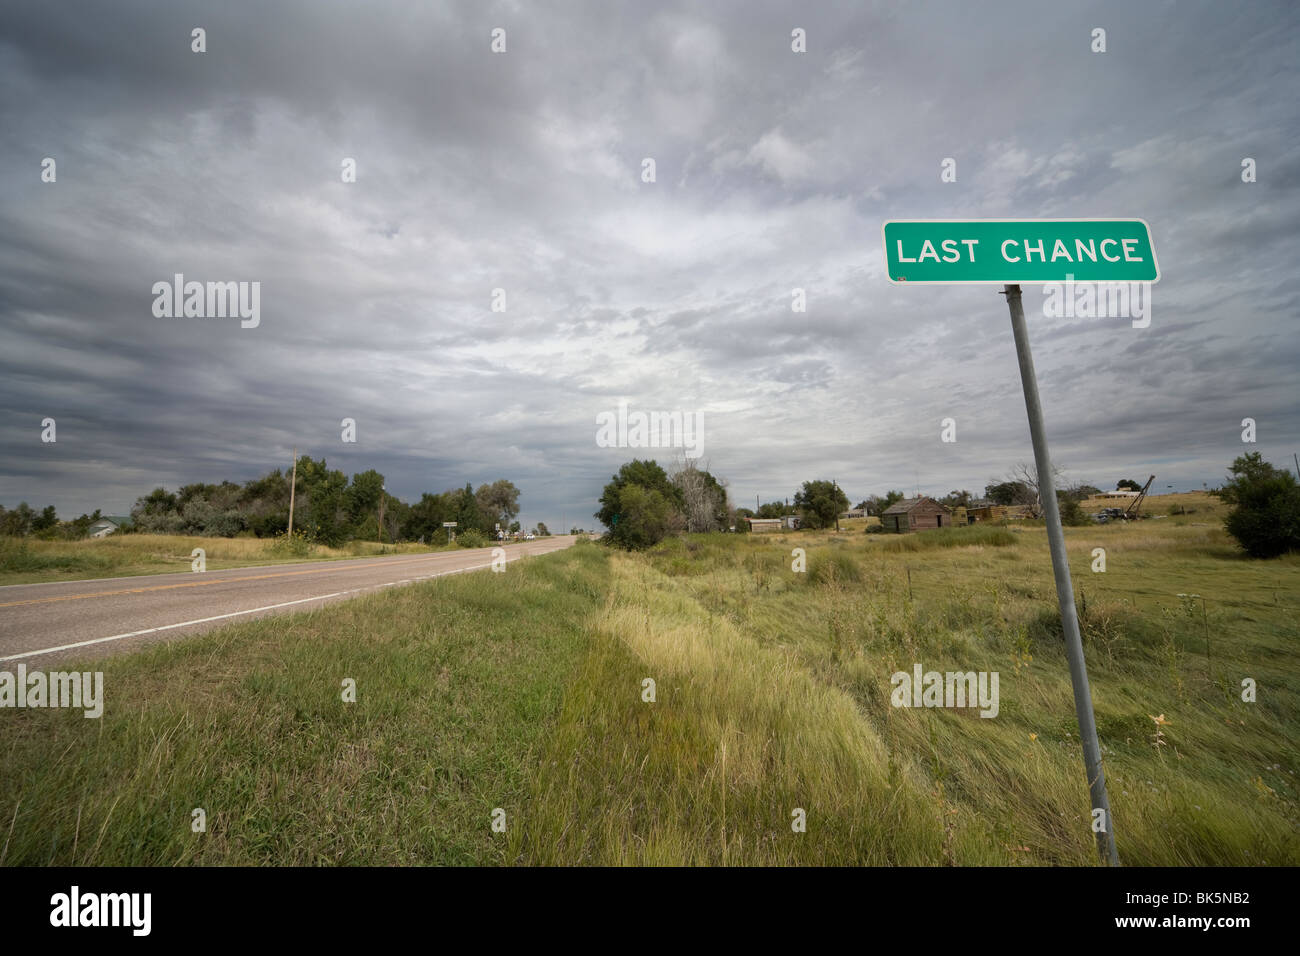 Stadt Zeichen letzte Chance, Colorado 80757 USA, an der Kreuzung des U.S. Highway 36 und State Highway 71. Stockfoto